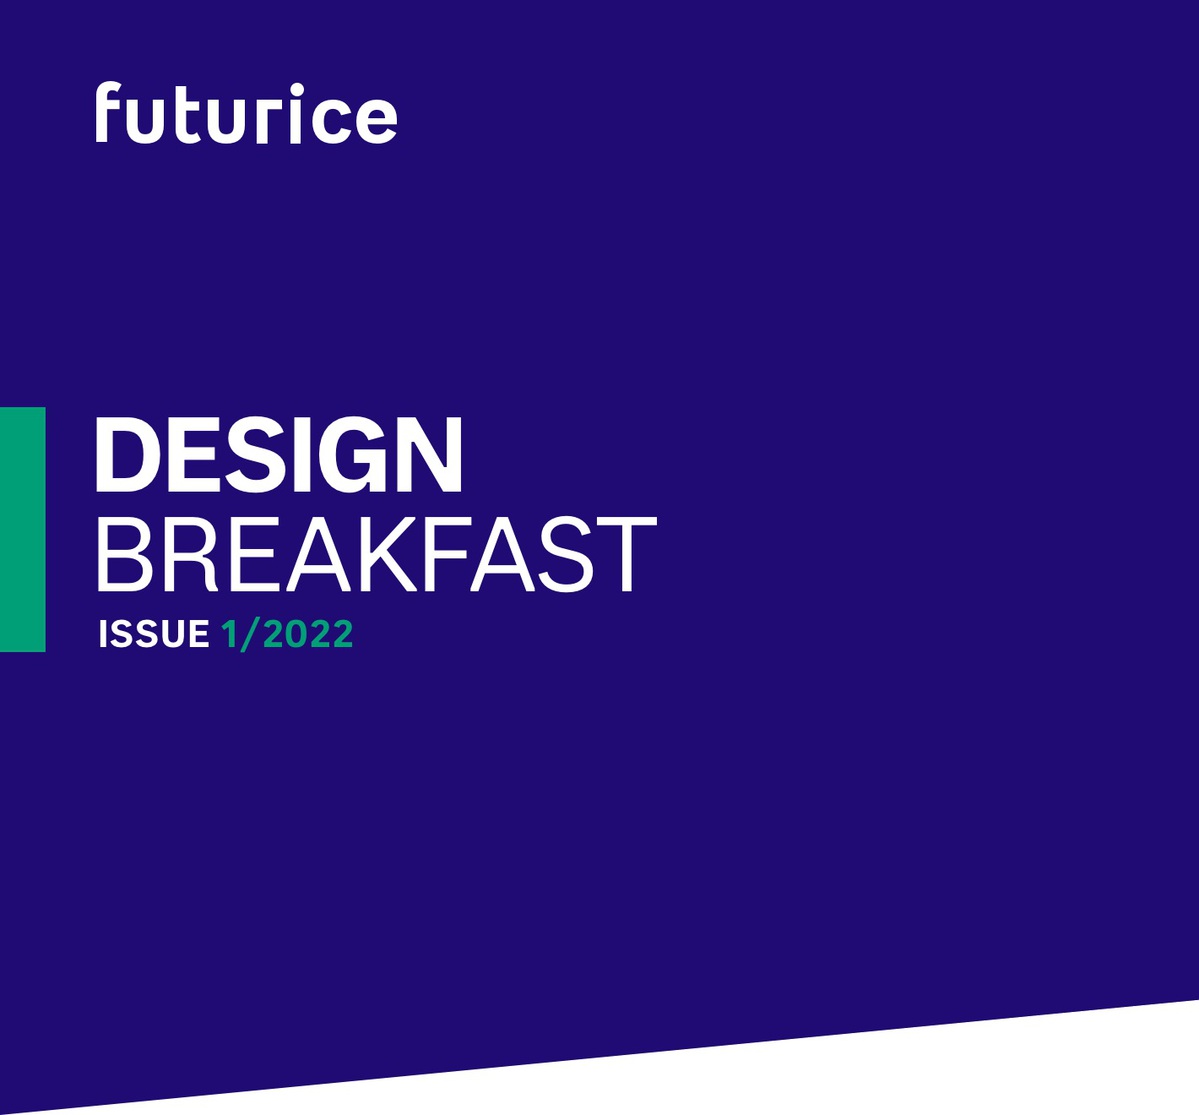 Design breakfast - Issue 1